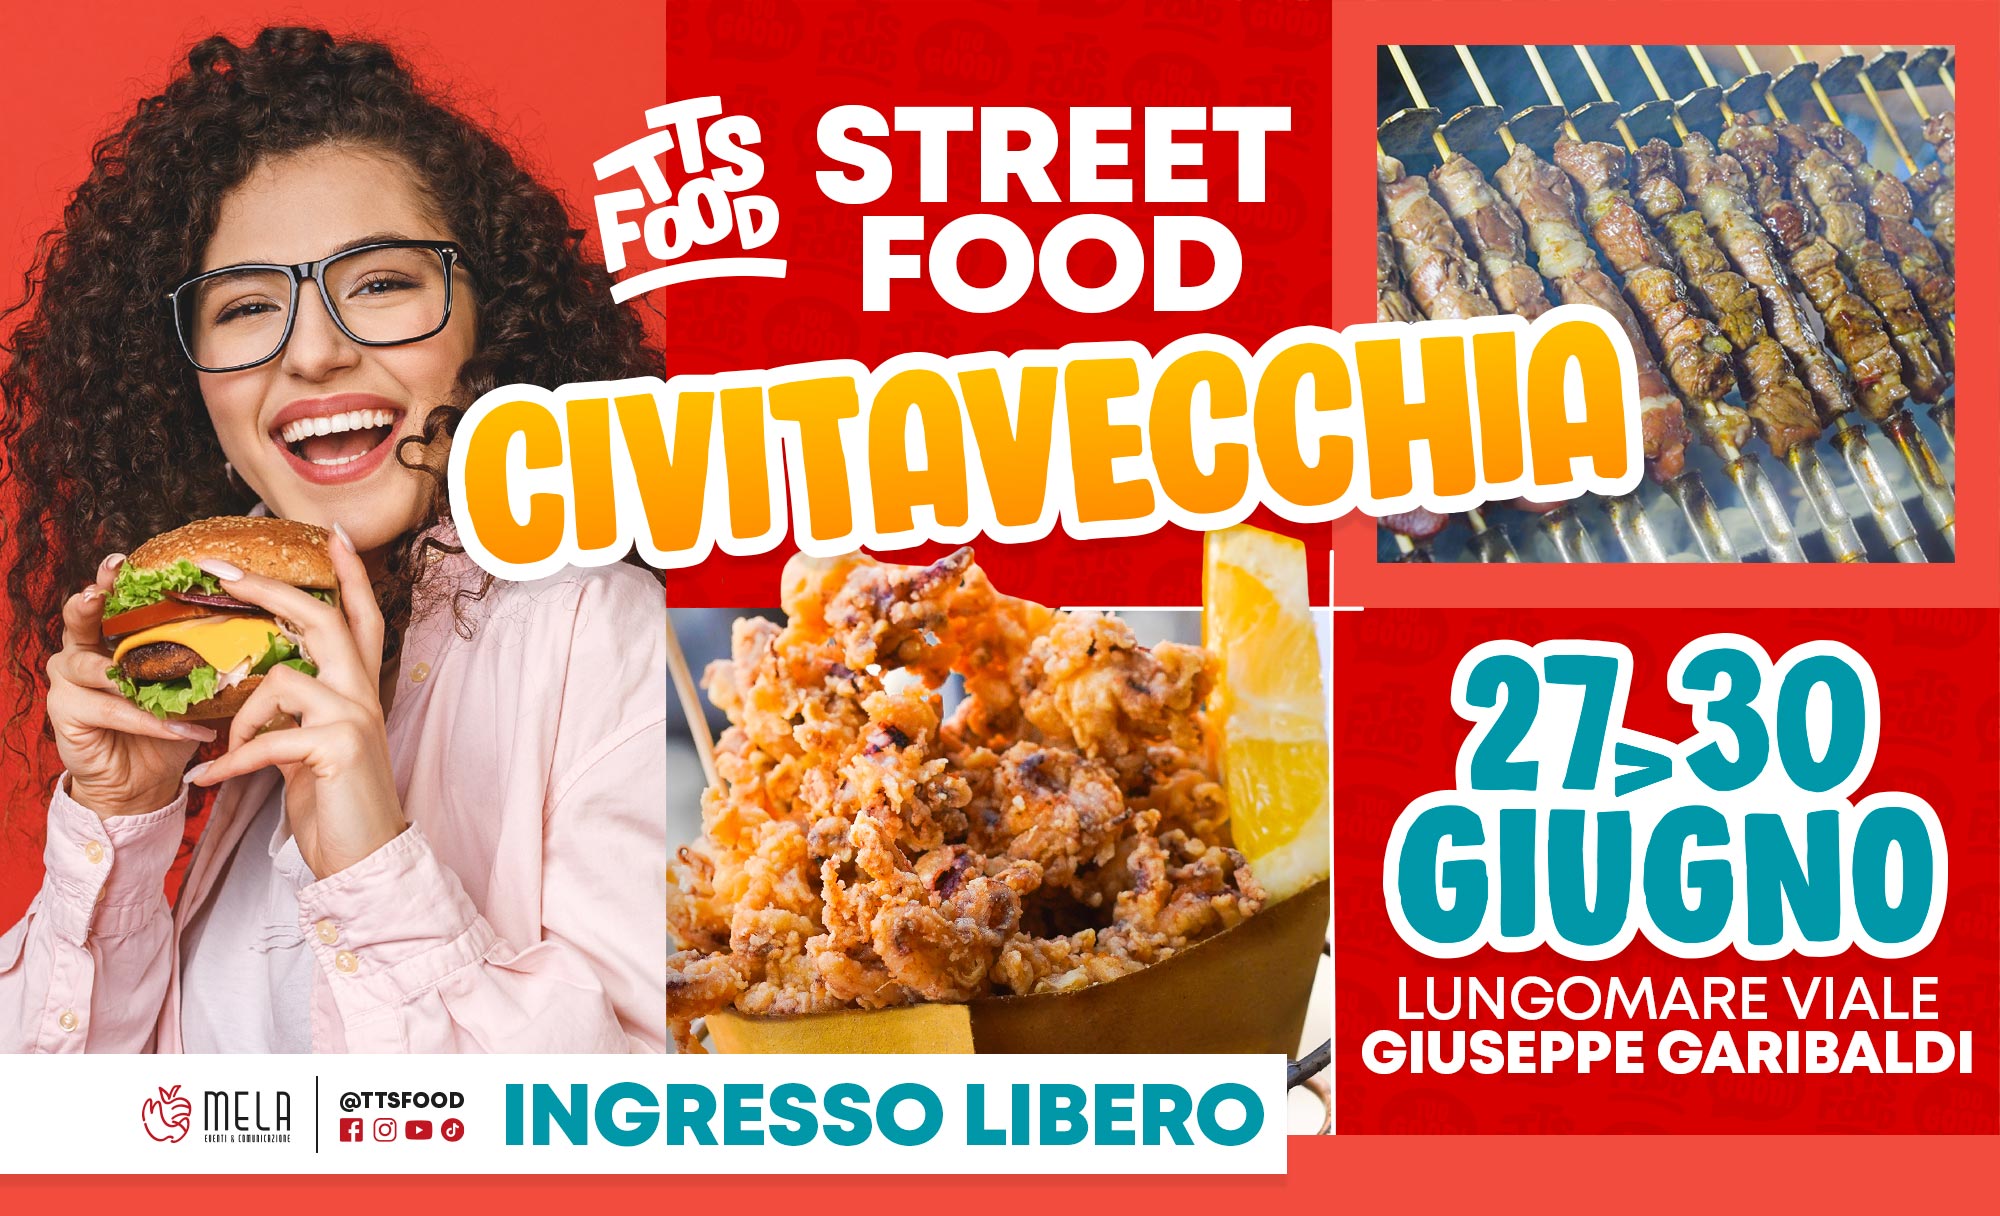 Civitavecchia Street Food 27-30 Giugno